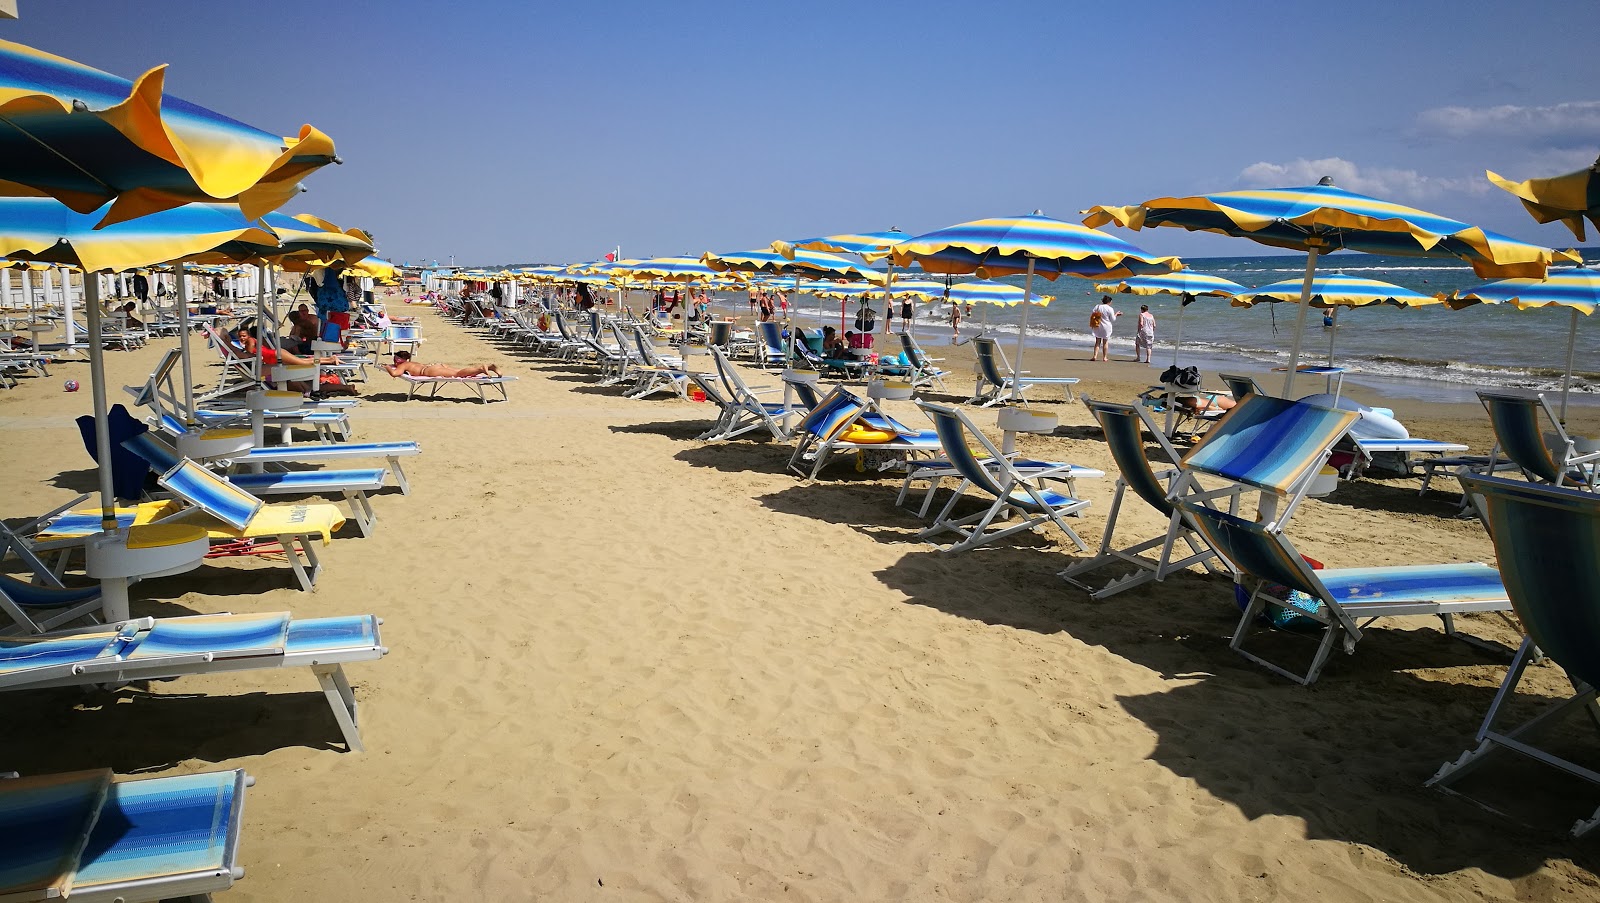 Photo de Nettuno beach II - endroit populaire parmi les connaisseurs de la détente